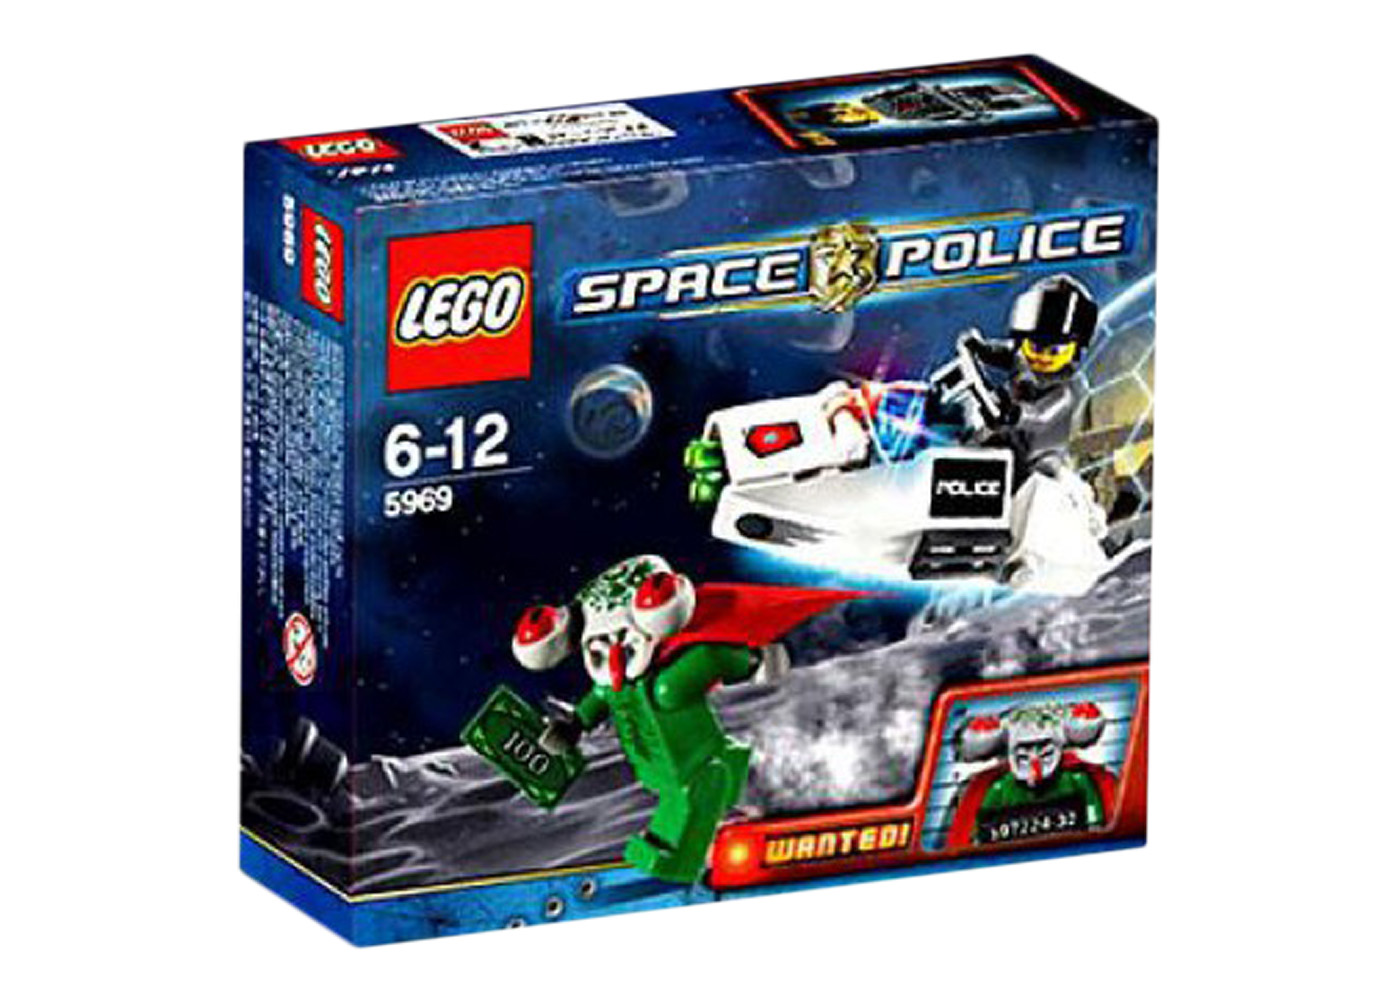 LEGO Space Police Squidman's Escape Set 5969 - US